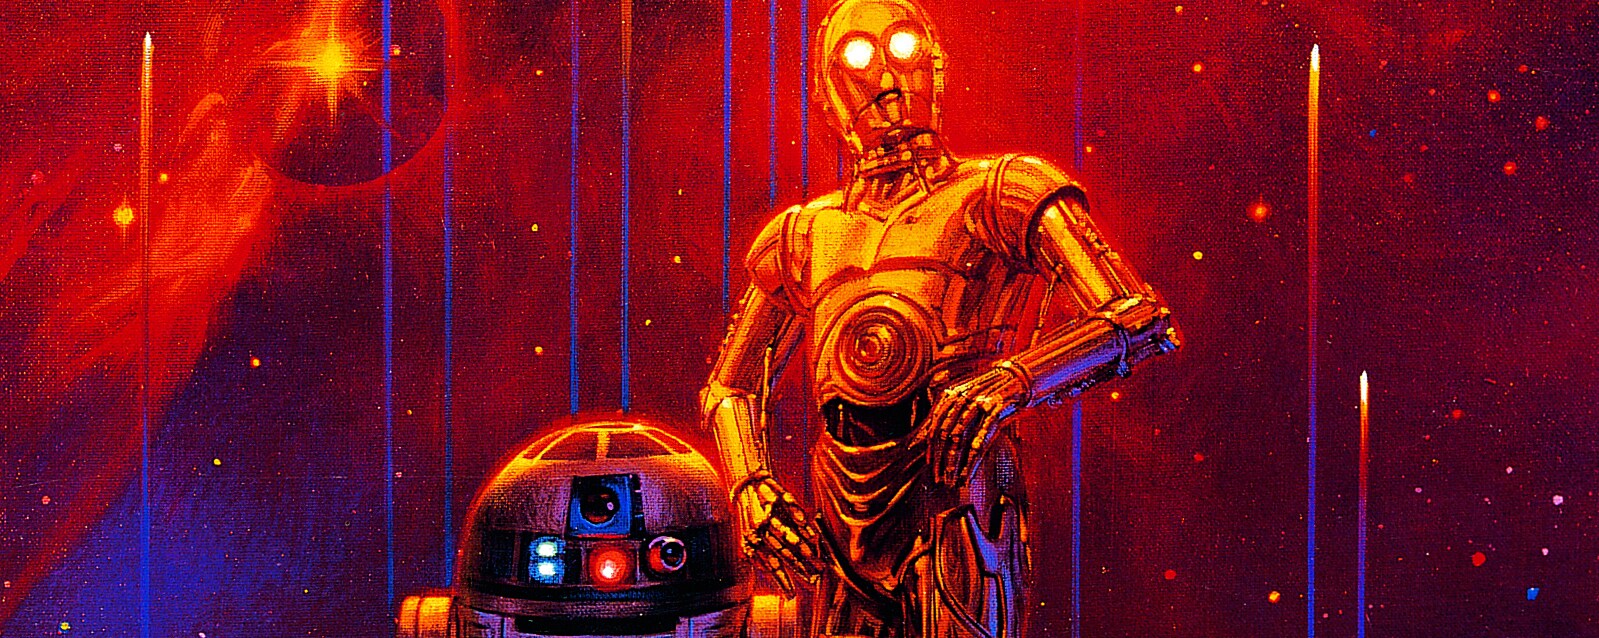 Star Wars: Return of the Jedi “Starfall” Poster